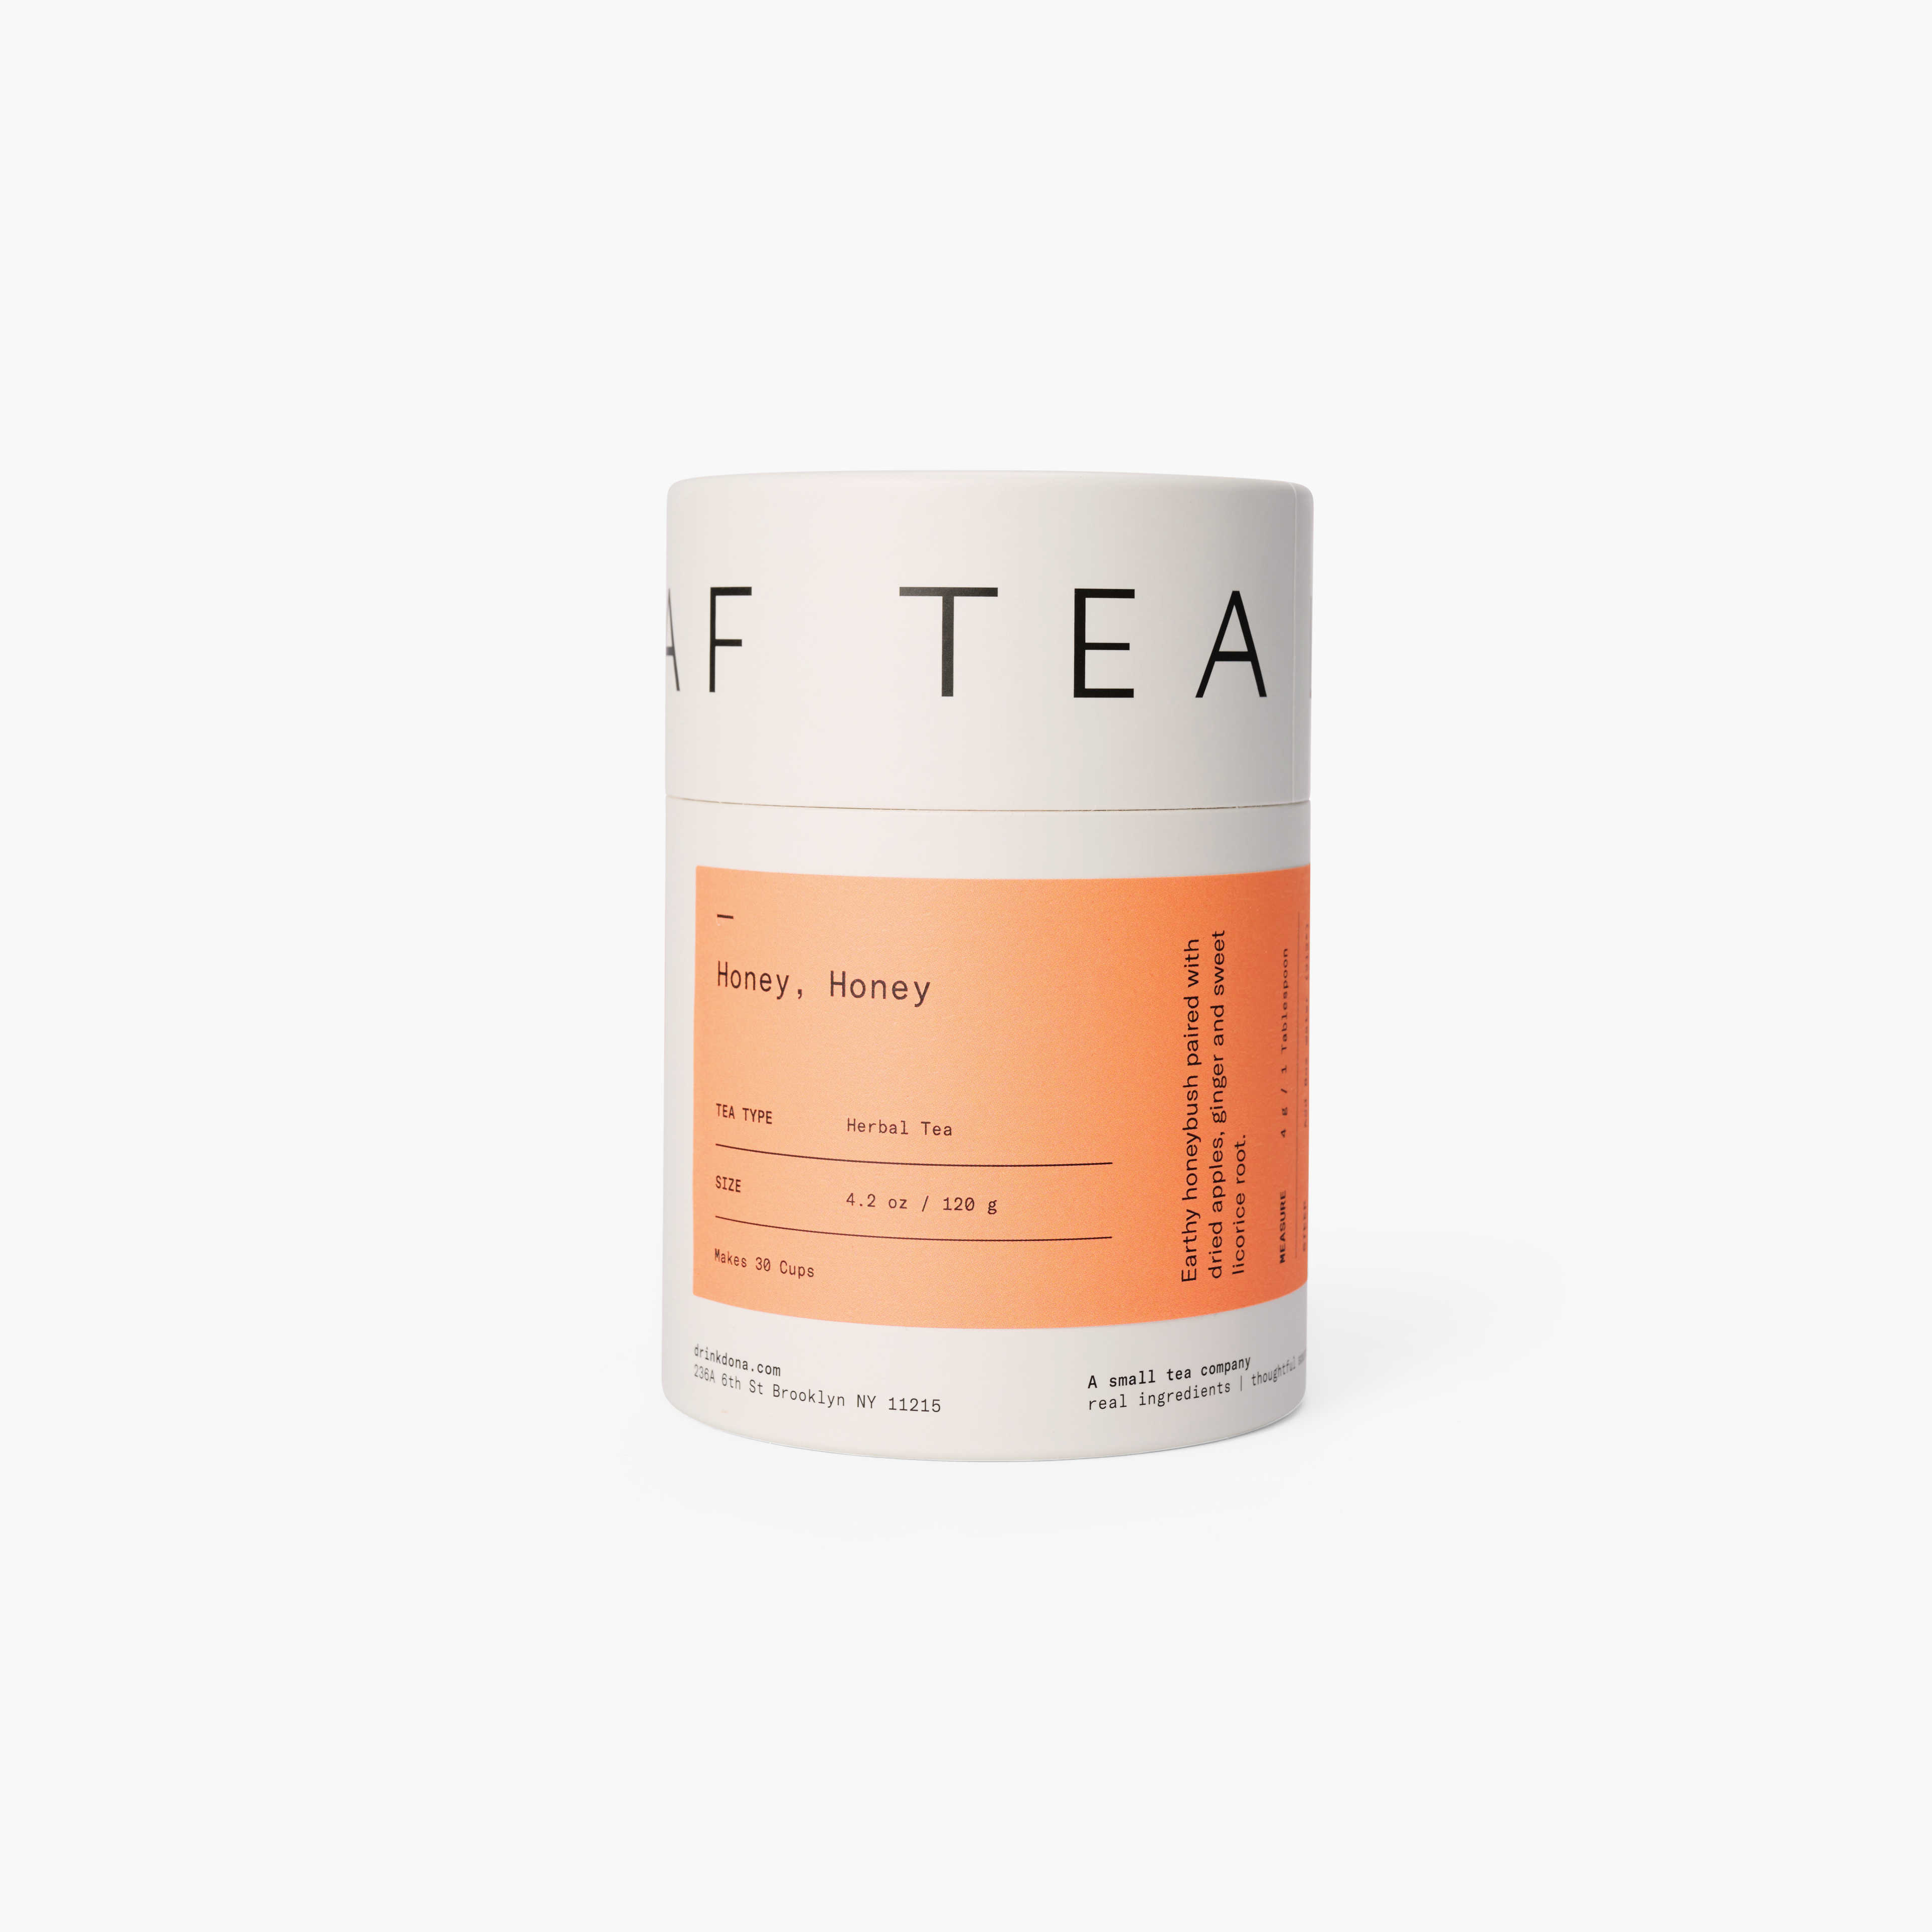 Honey, Honey Loose Leaf Herbal Tea